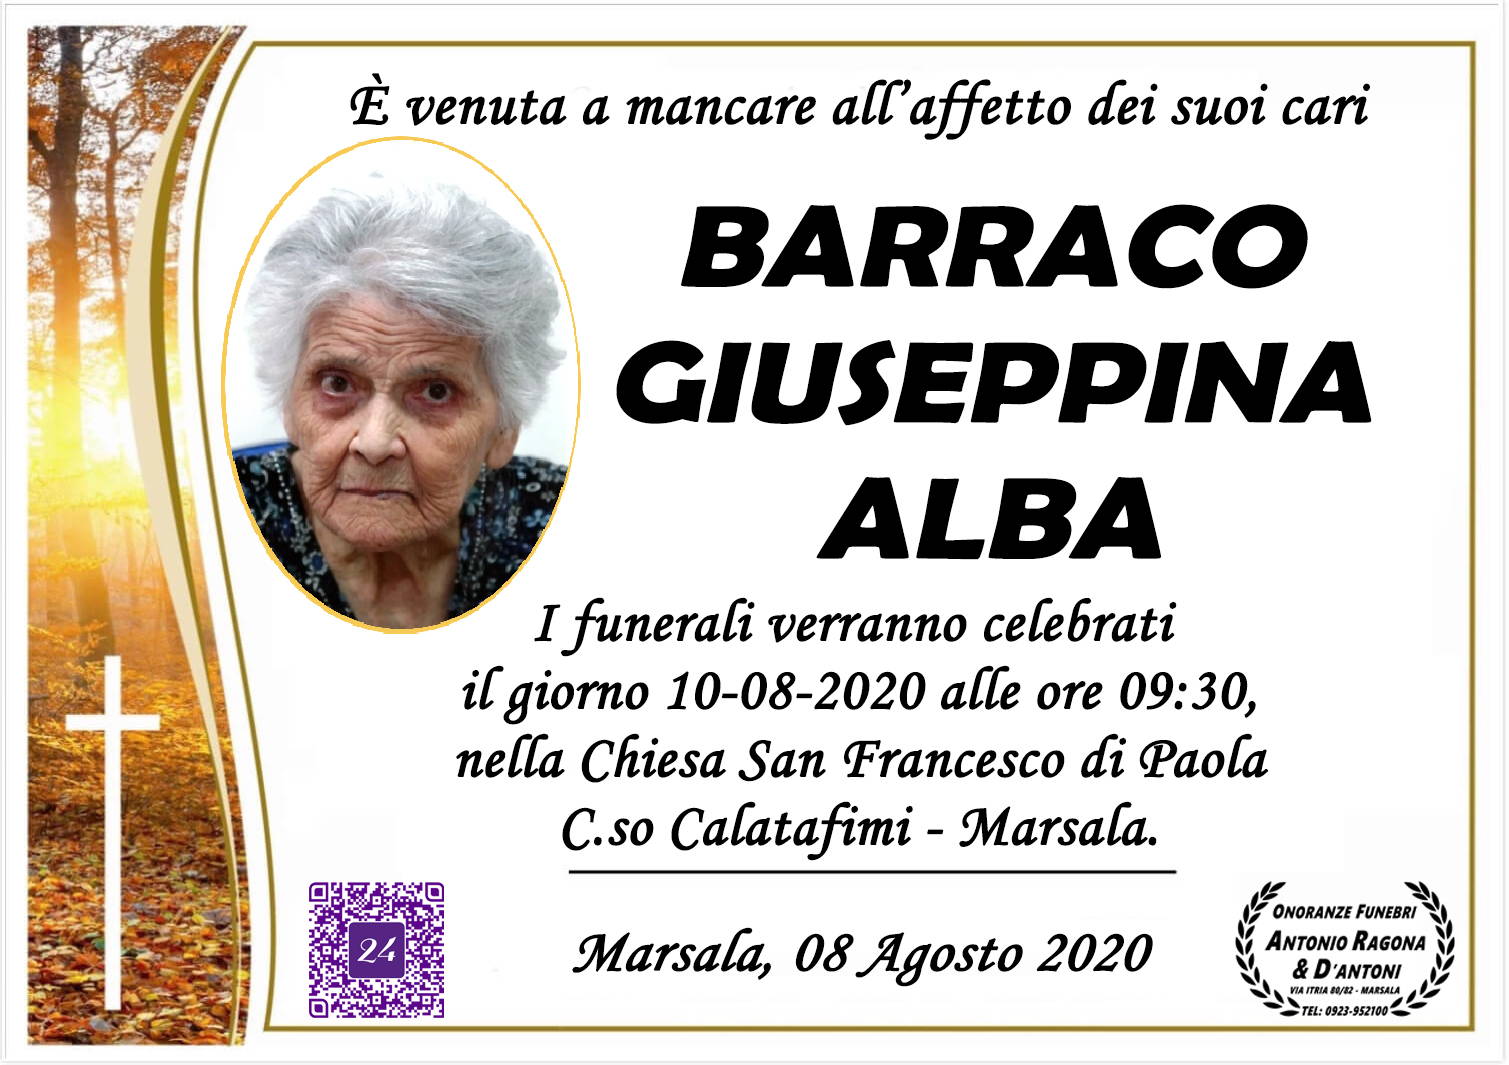 Giuseppina Alba Barraco